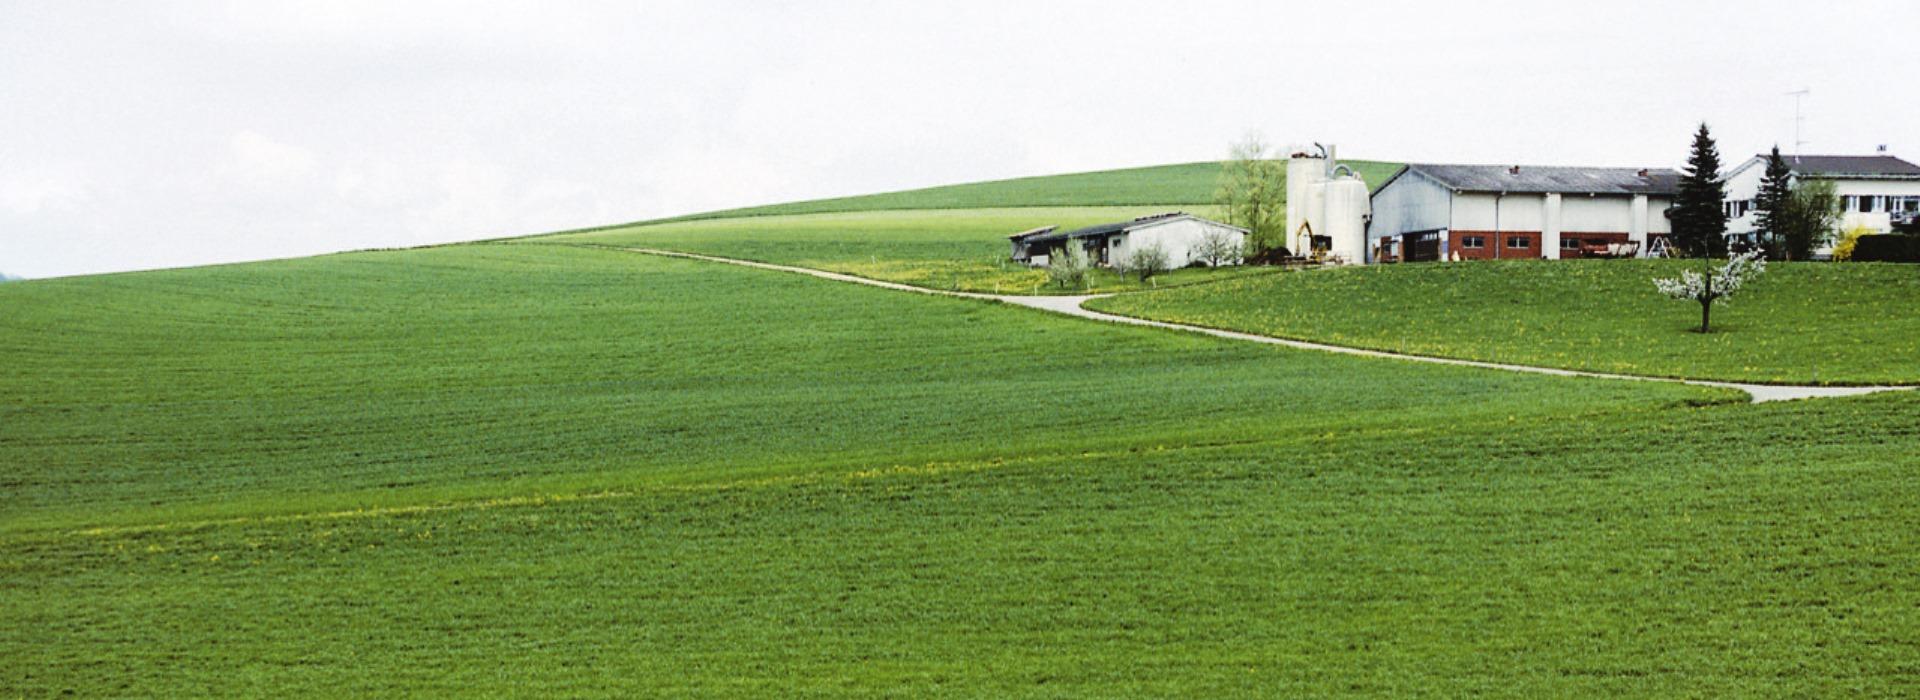 Bleibt eine umweltverträgliche Landwirtschaft nur ein Wunsch?